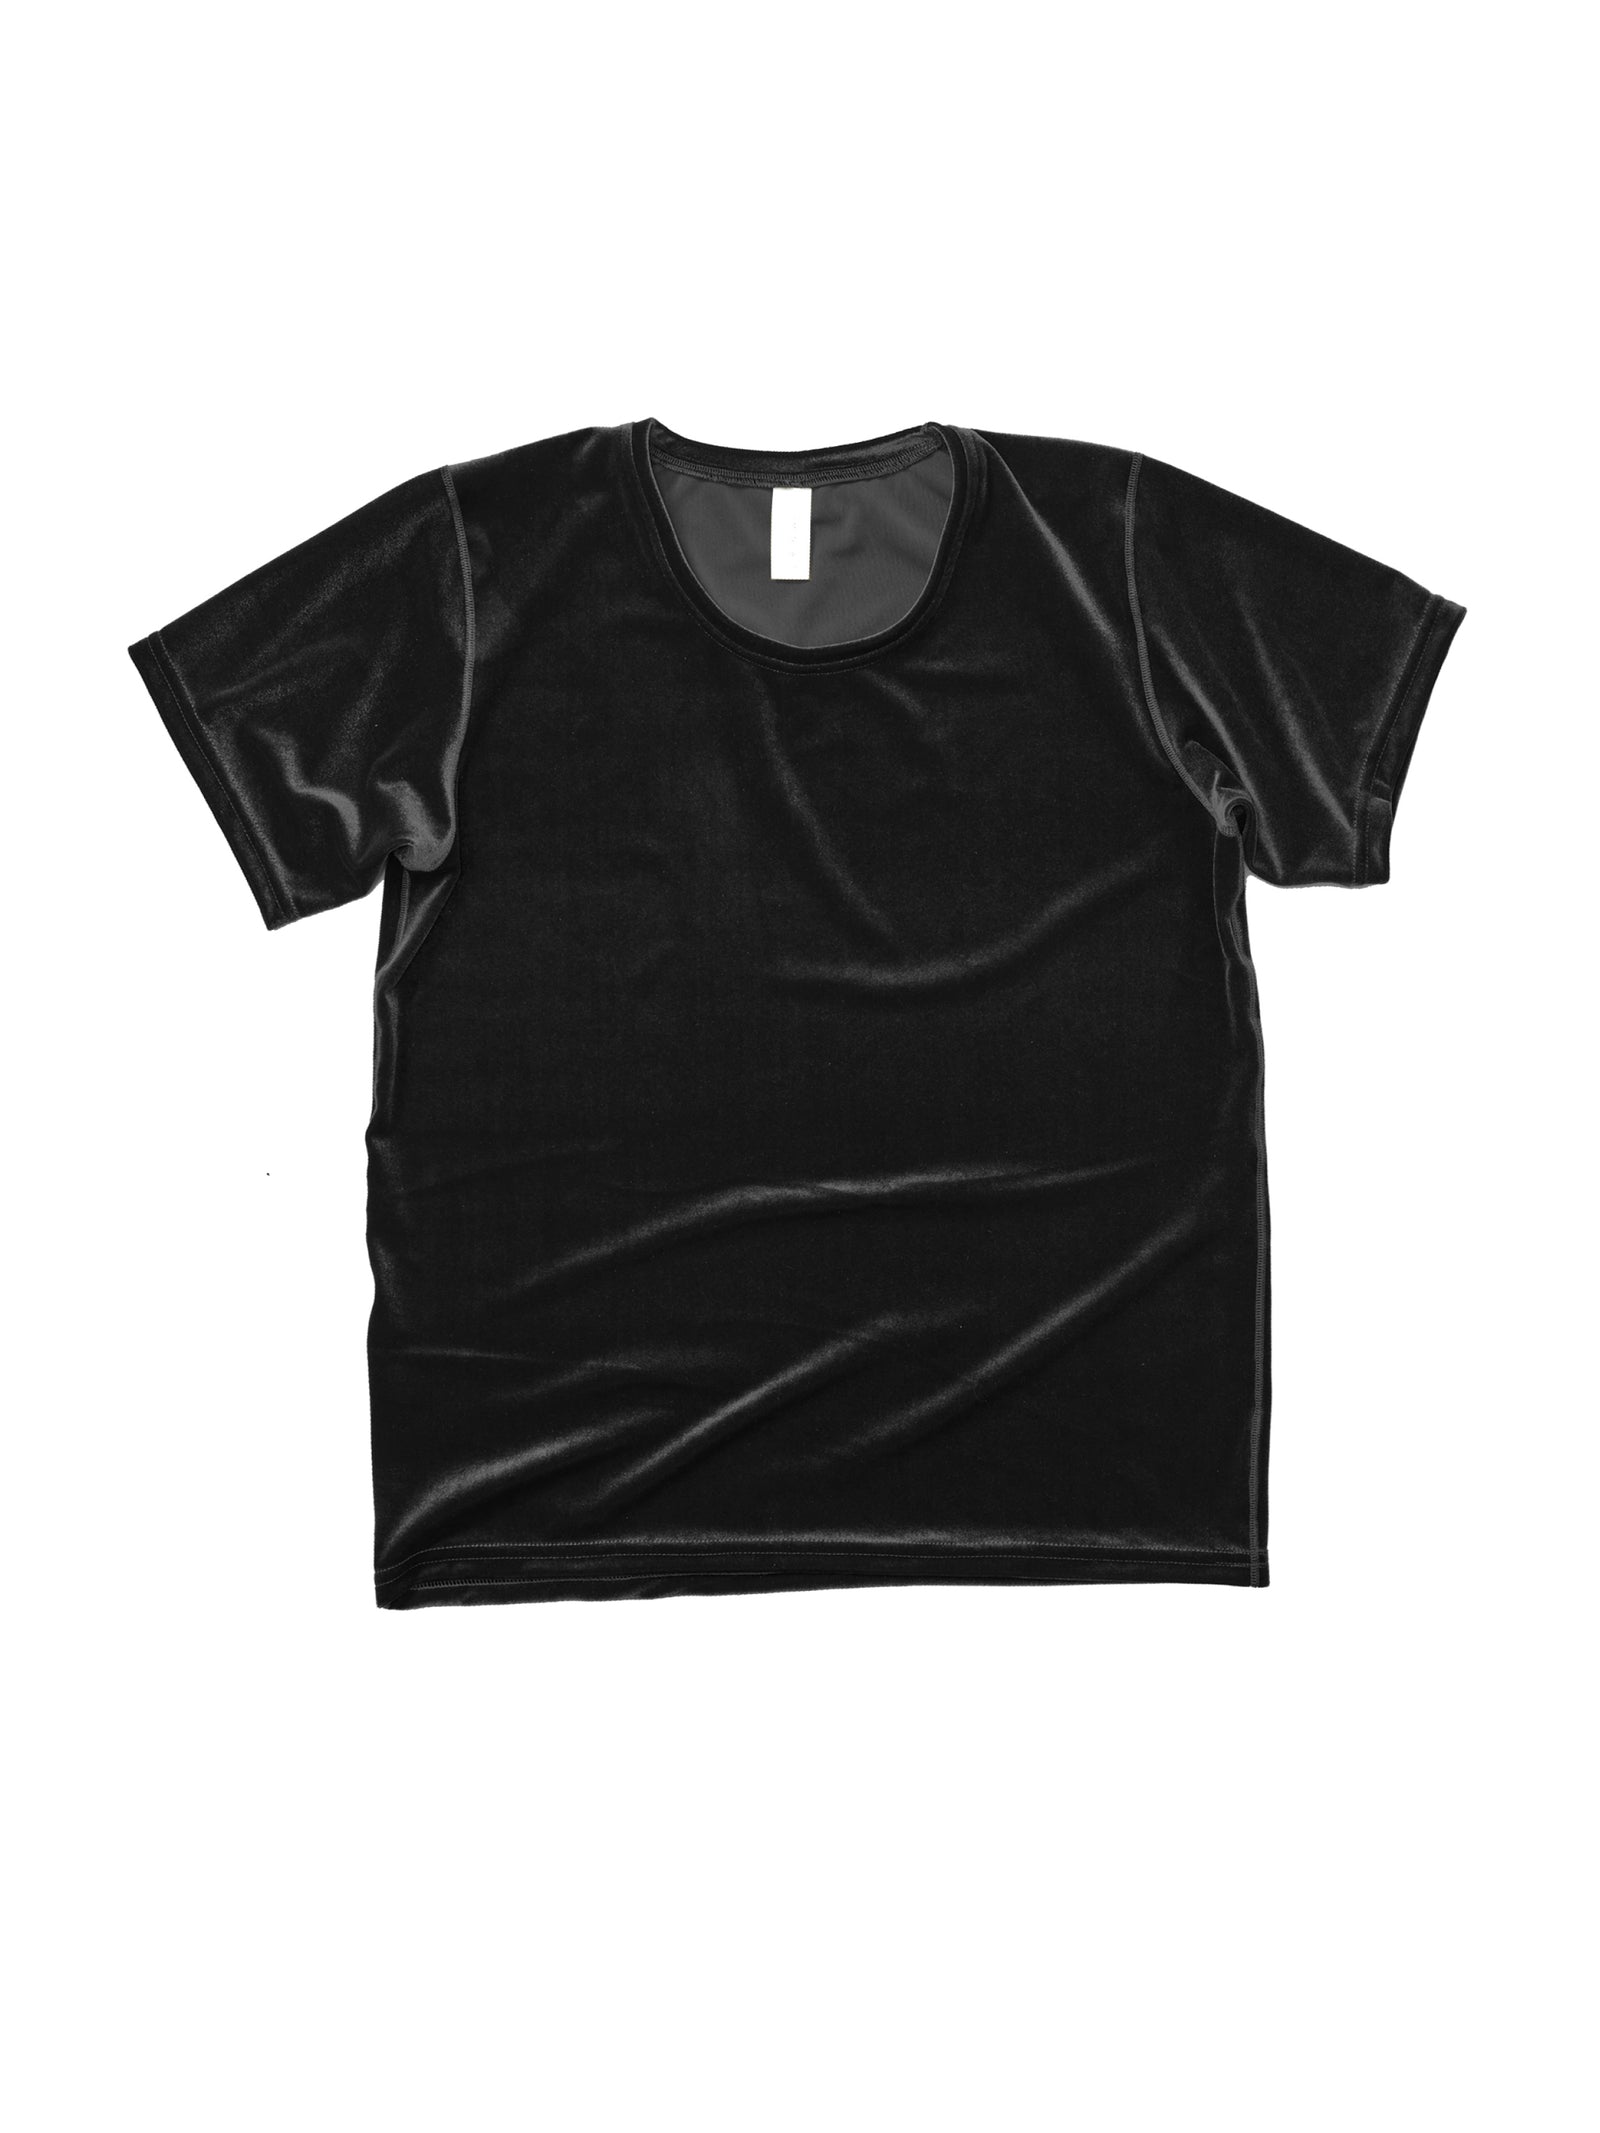 T-shirt Crop top Clothing Velvet, T-shirt, fashion, black png